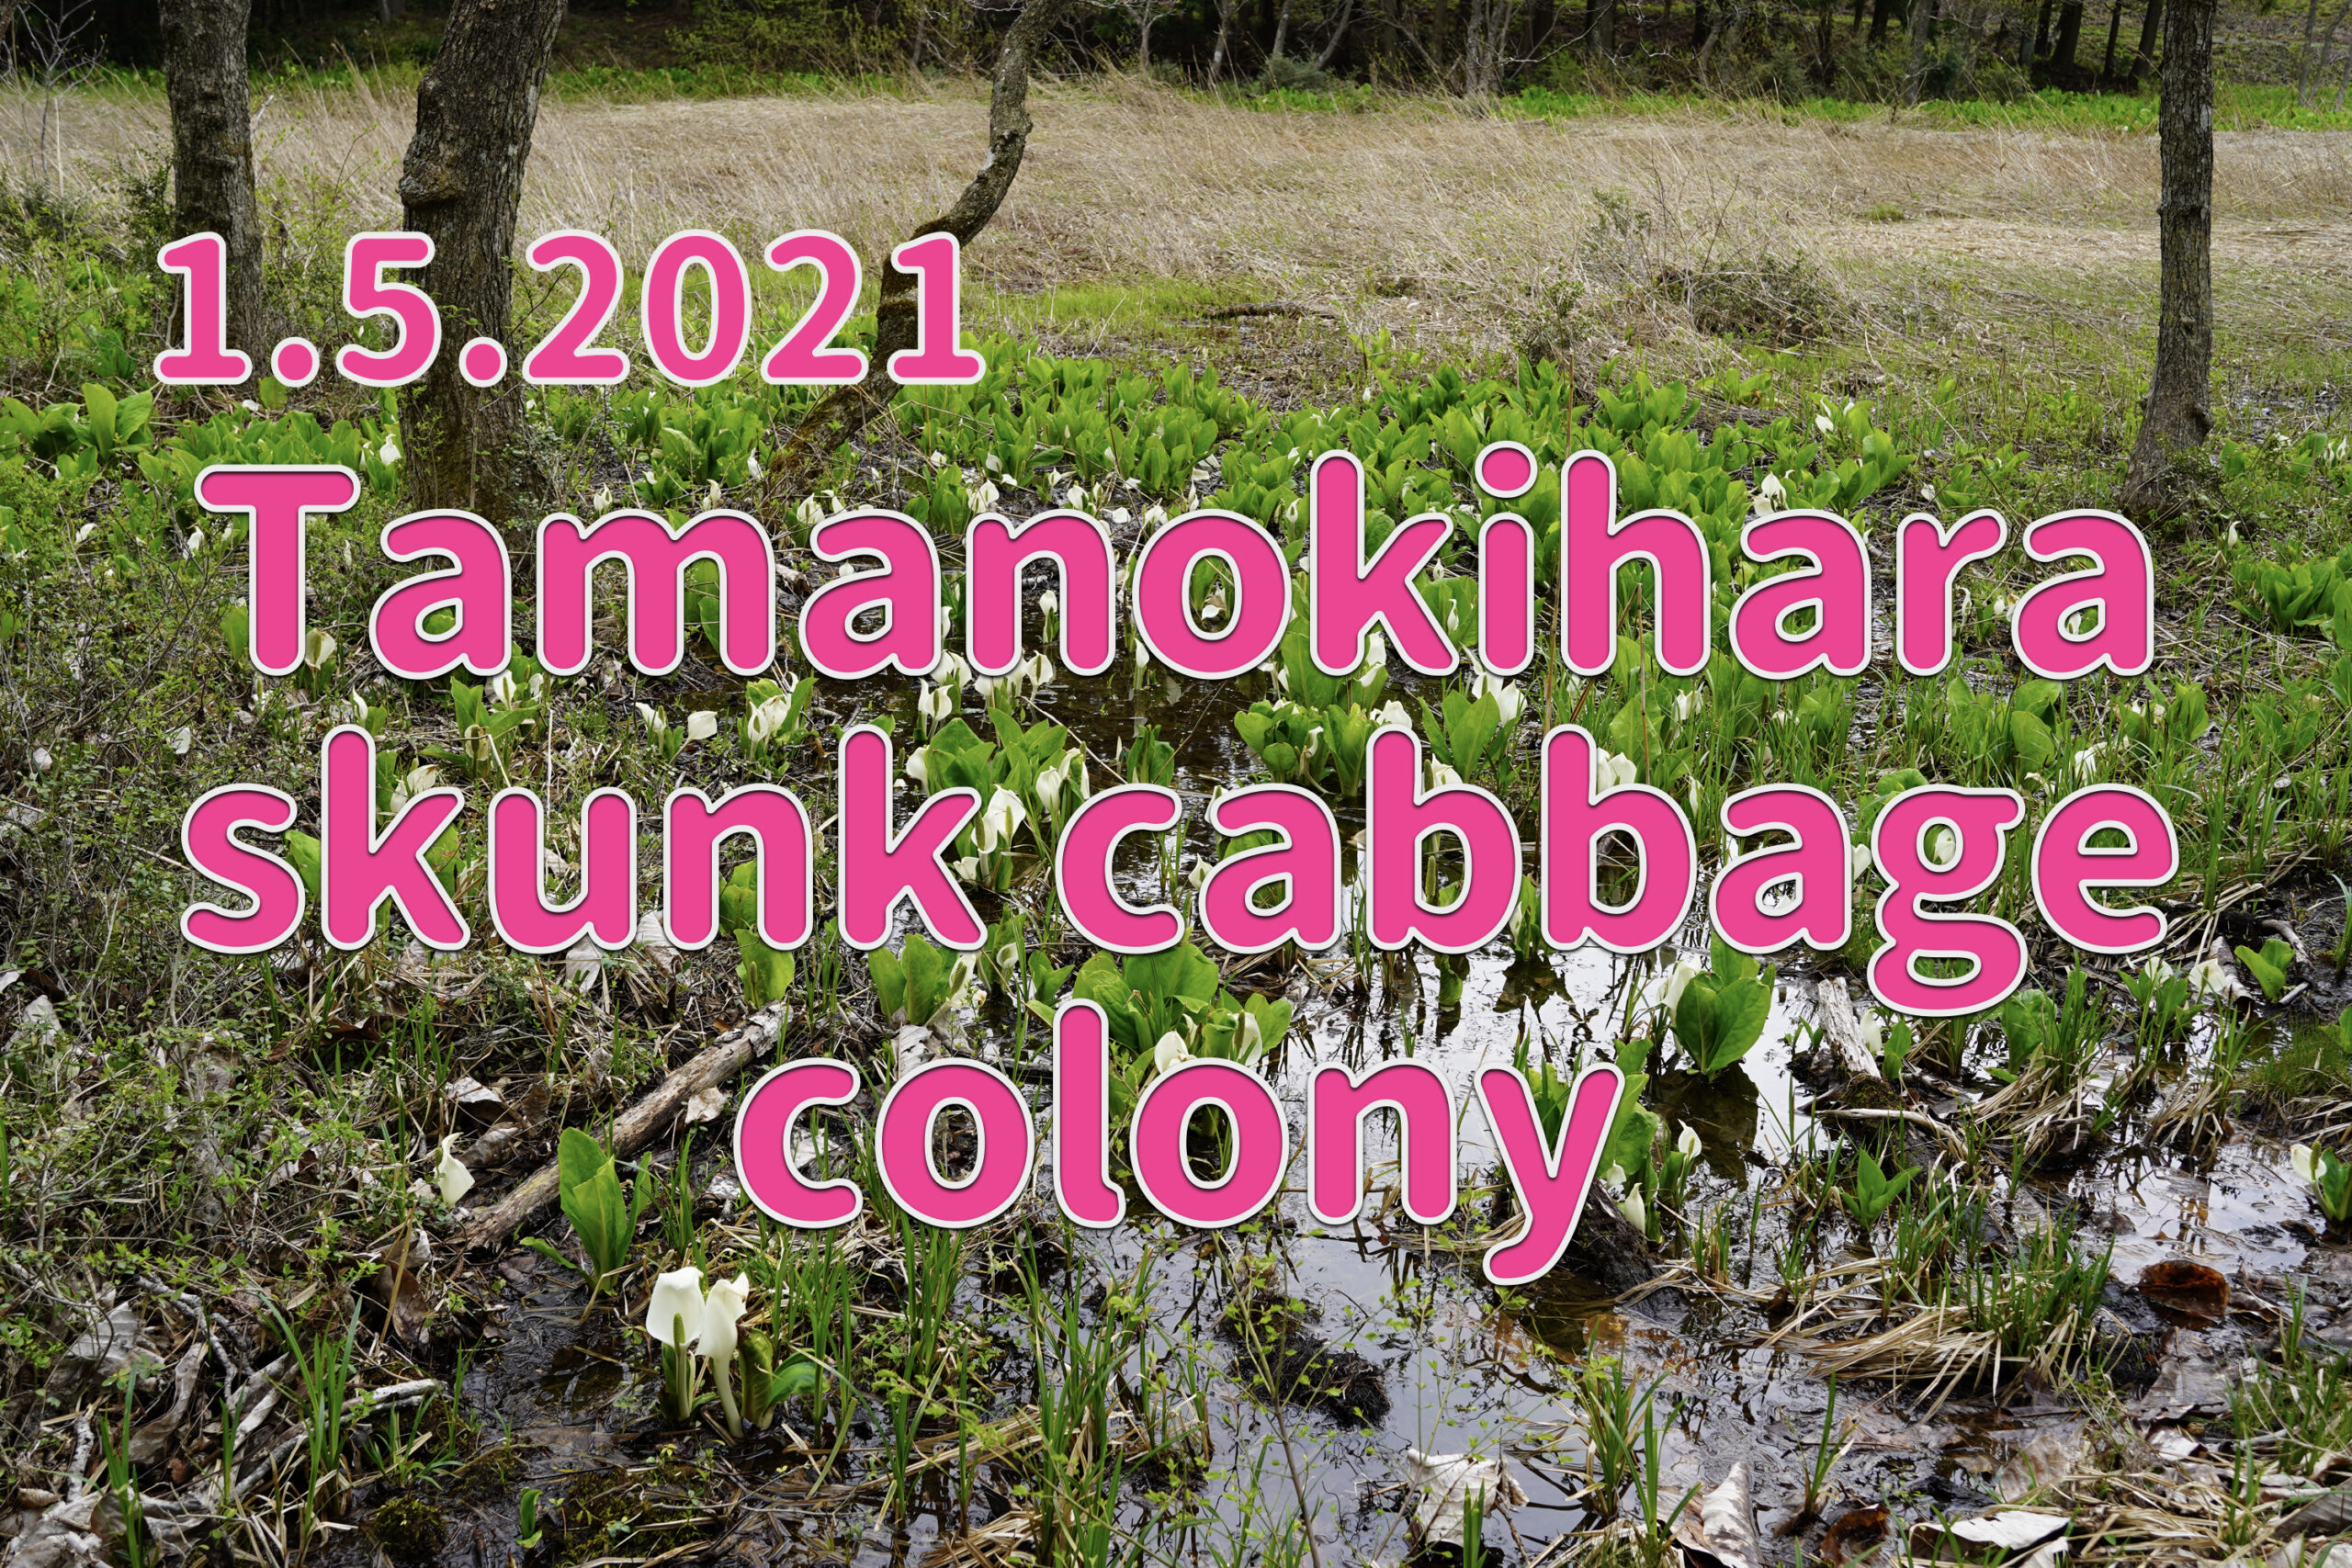 1.5.2021 Tamanokihara skunk cabbage colony-out of season visit-